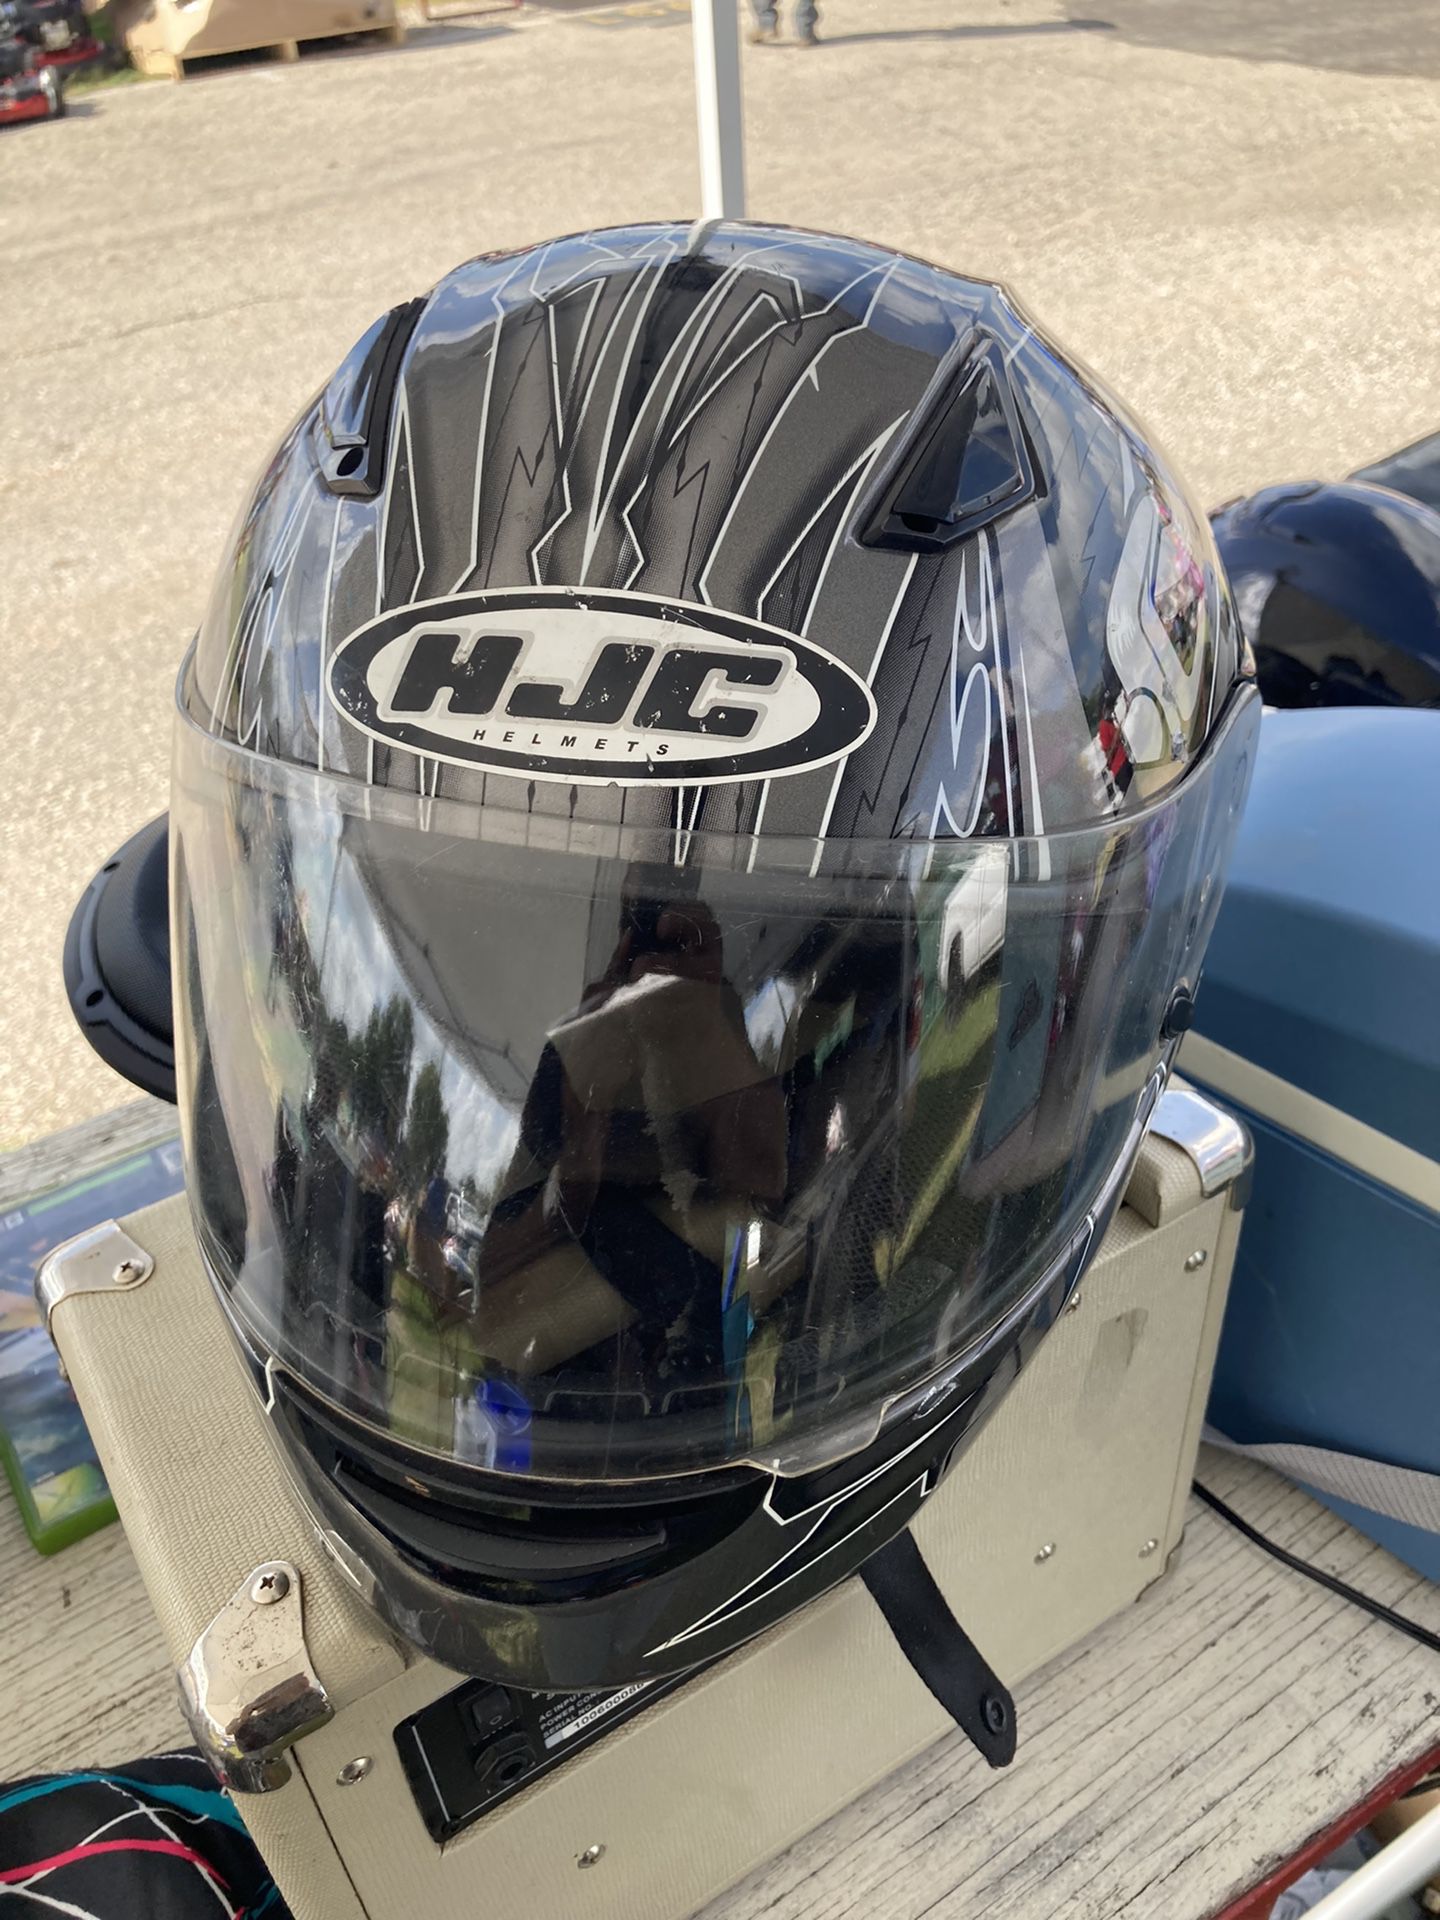 HJC Motorcycle Helmet Large 